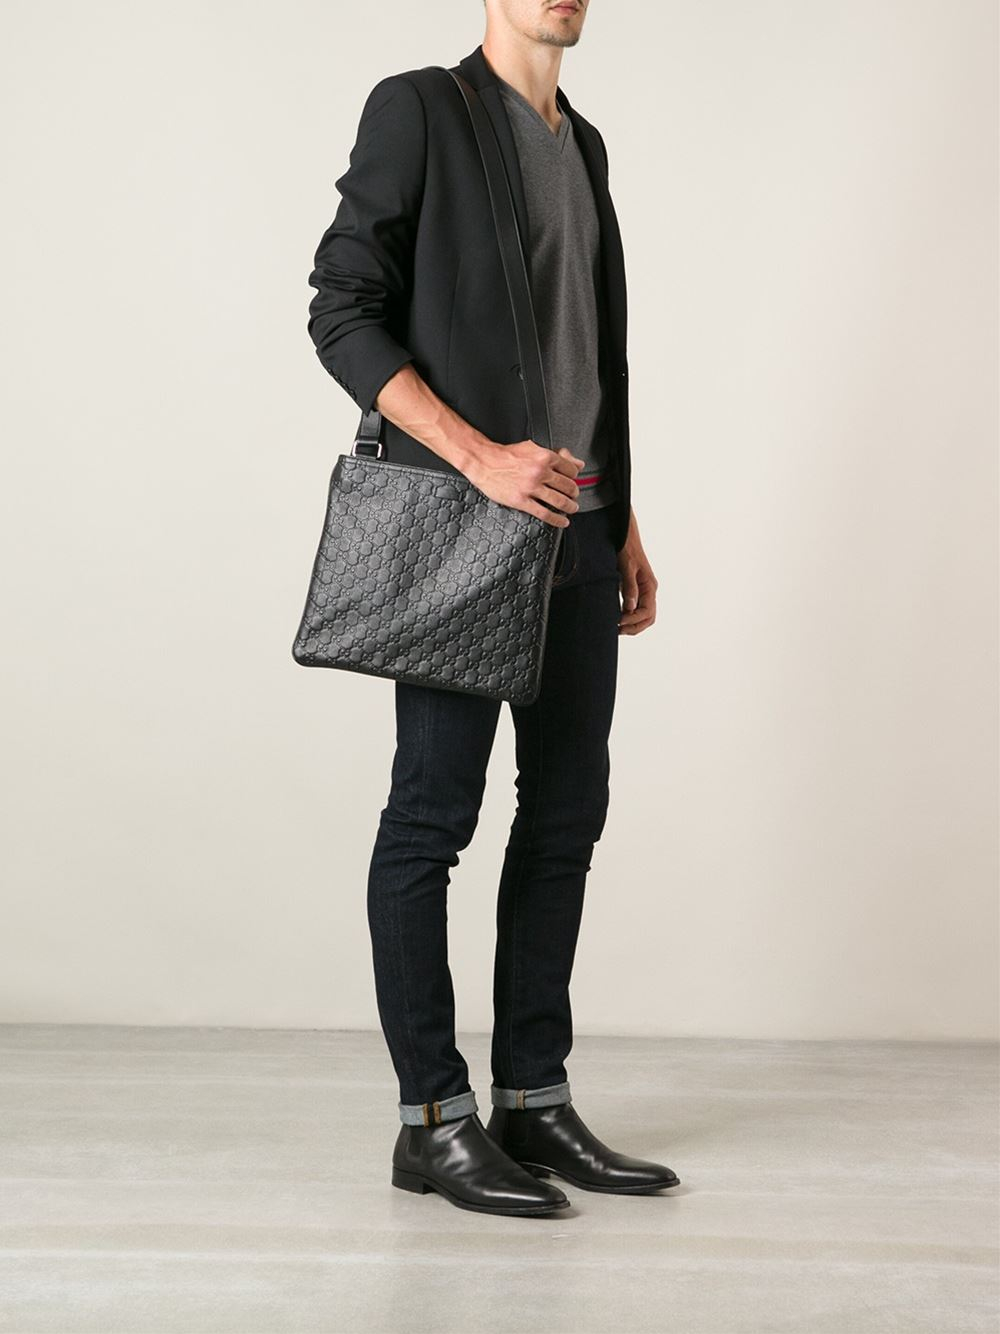 Lyst - Gucci Monogram Messenger Bag in Black for Men